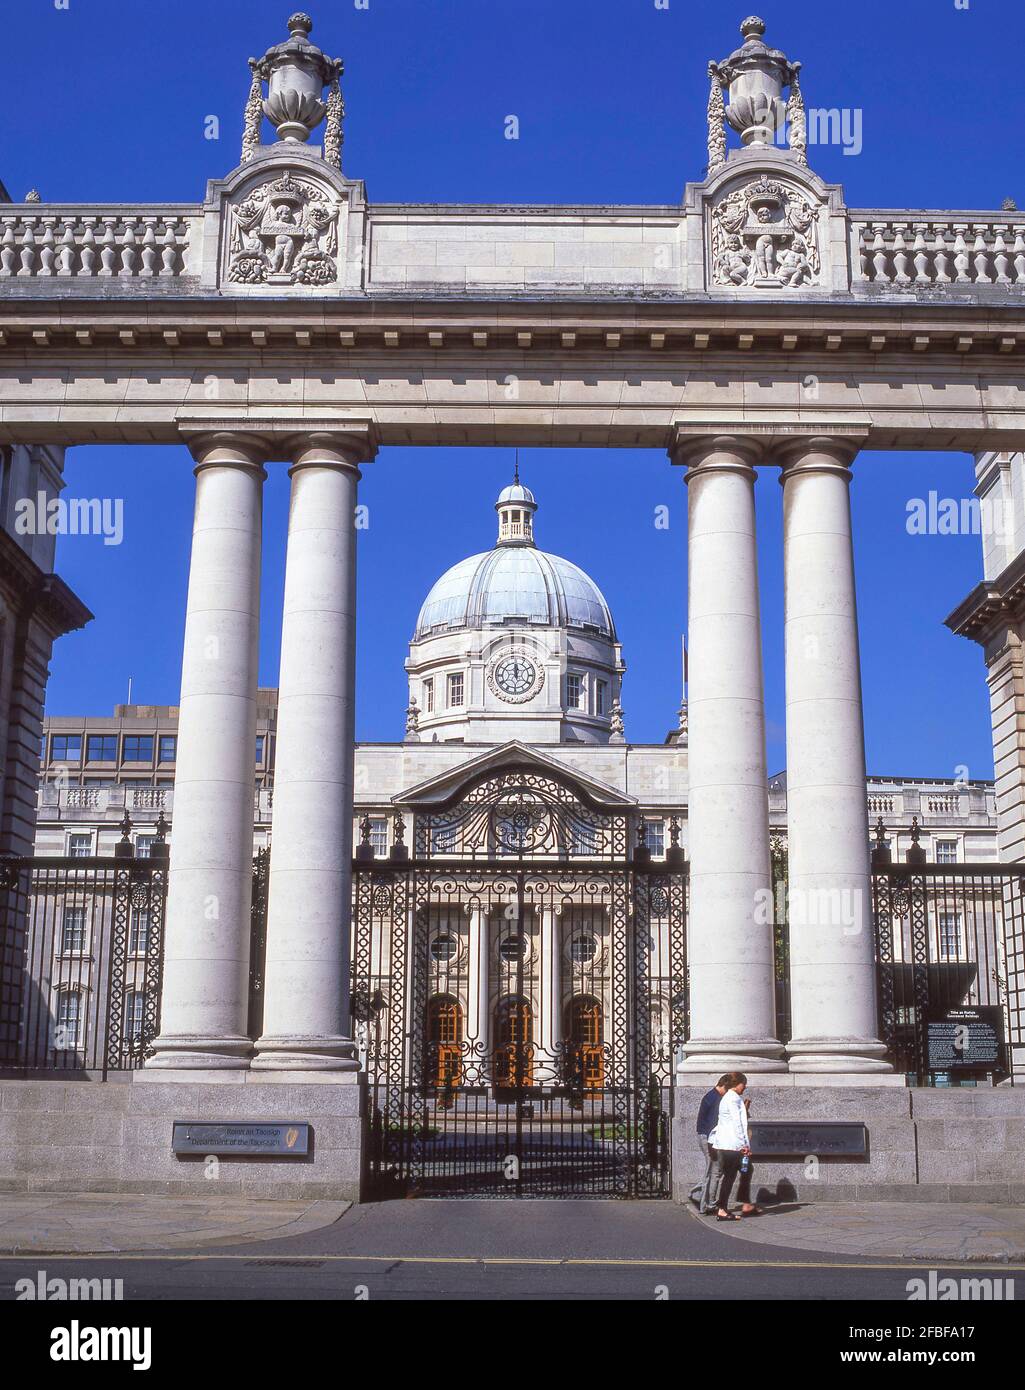 Abteilung des Taoiseach (Roinn eine Taoisigh) Regierungsgebäude, Merrion Street Upper, Dublin, Provinz Leinster, Republik von Irland Stockfoto